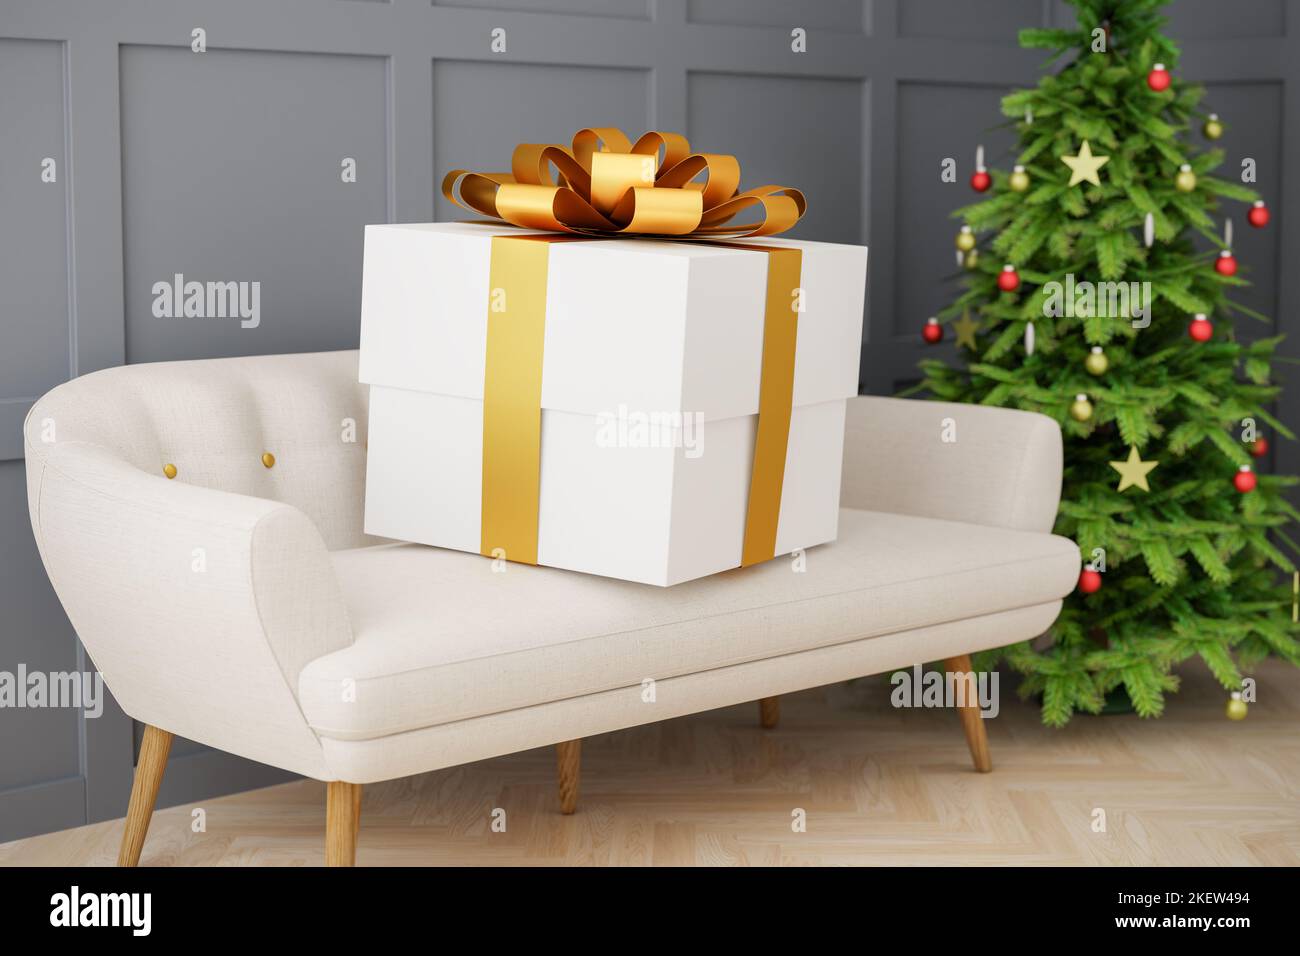 Eine übergroße Geschenk-Box auf einem Sofa. Weihnachtsbaum im Hintergrund. Geringe Schärfentiefe. Konzept für übermäßiges Geben. Stockfoto